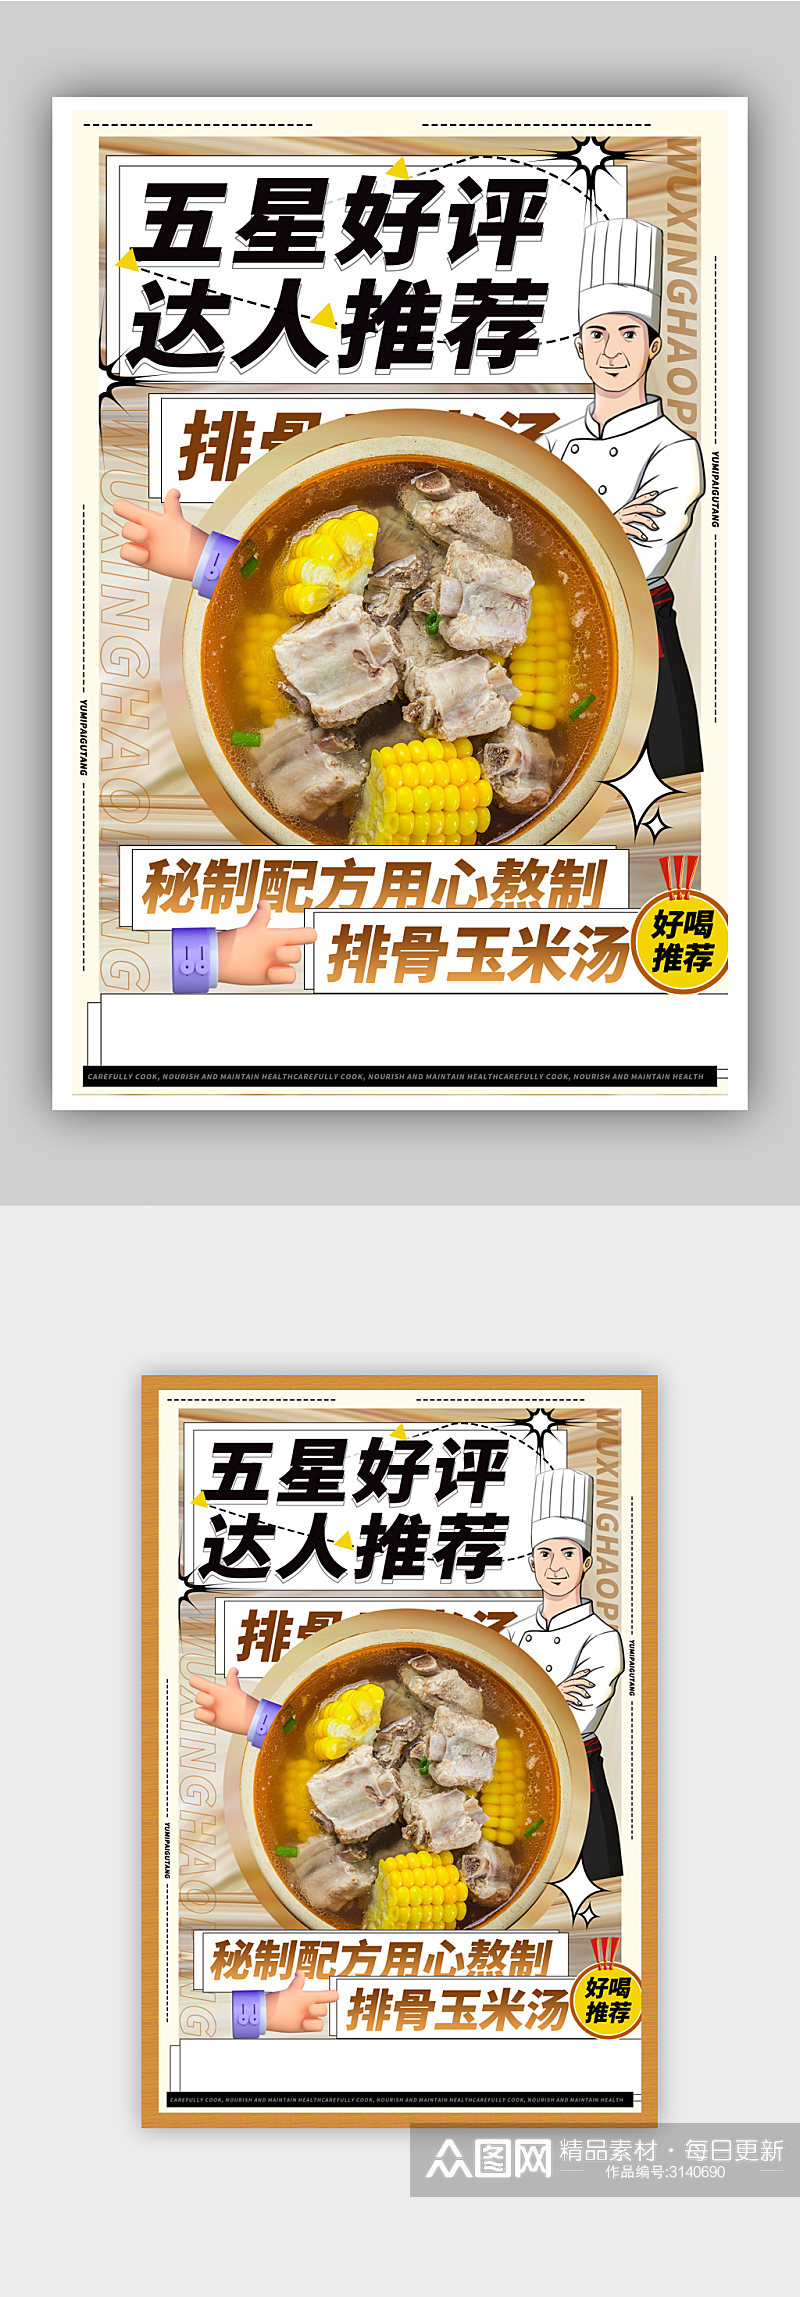 美食排骨玉米汤宣传海报素材